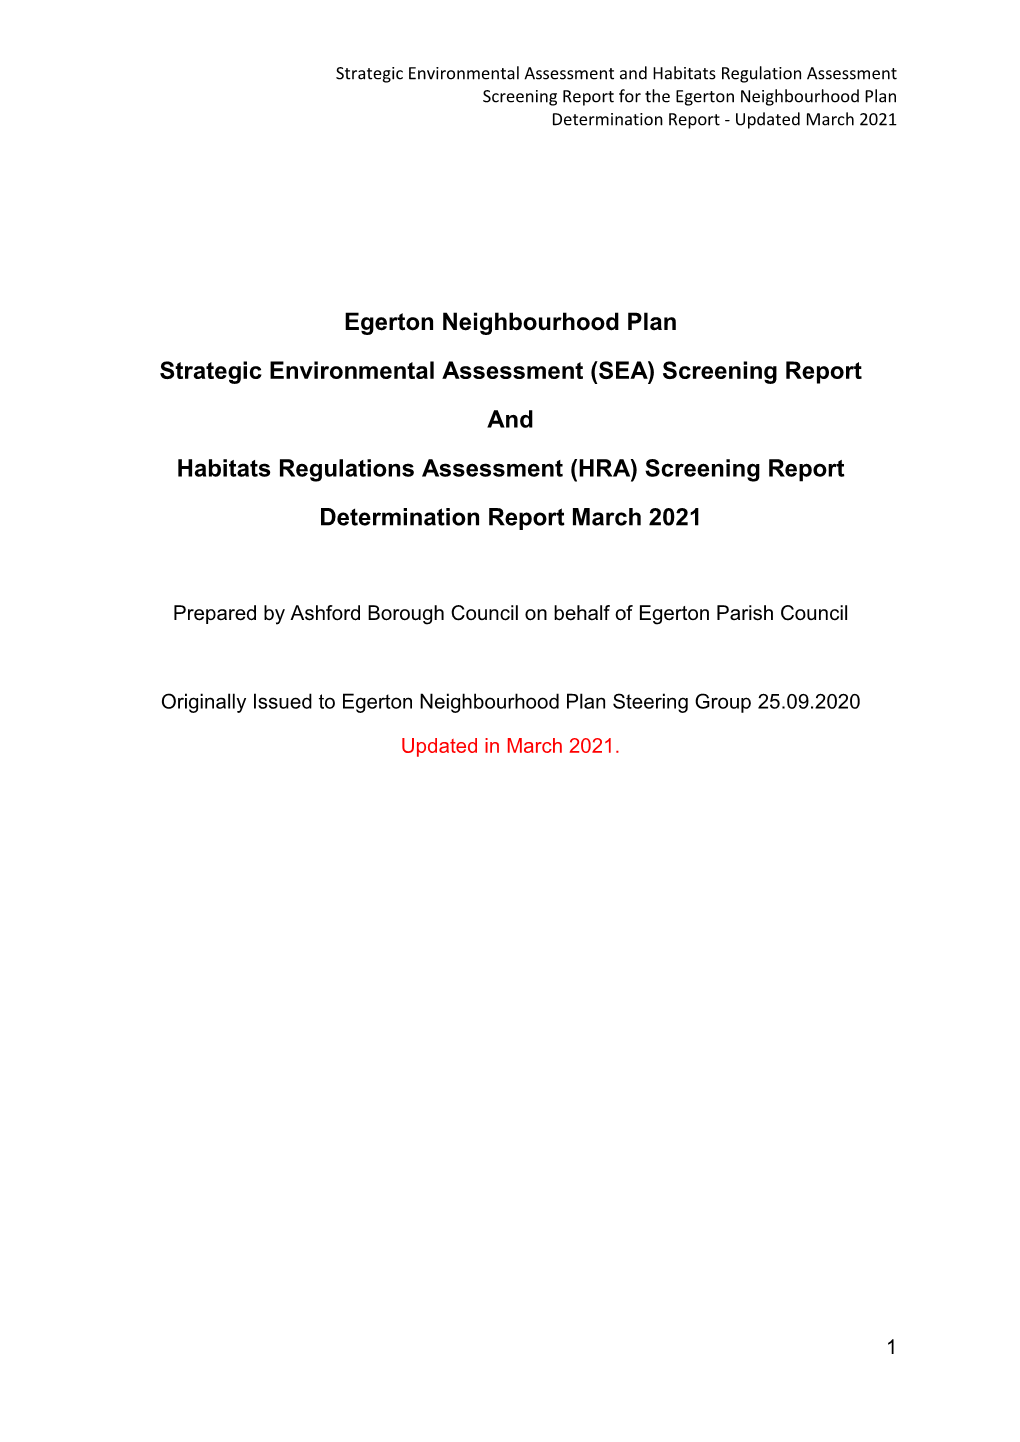 SEA) Screening Report and Habitats Regulations Assessment (HRA